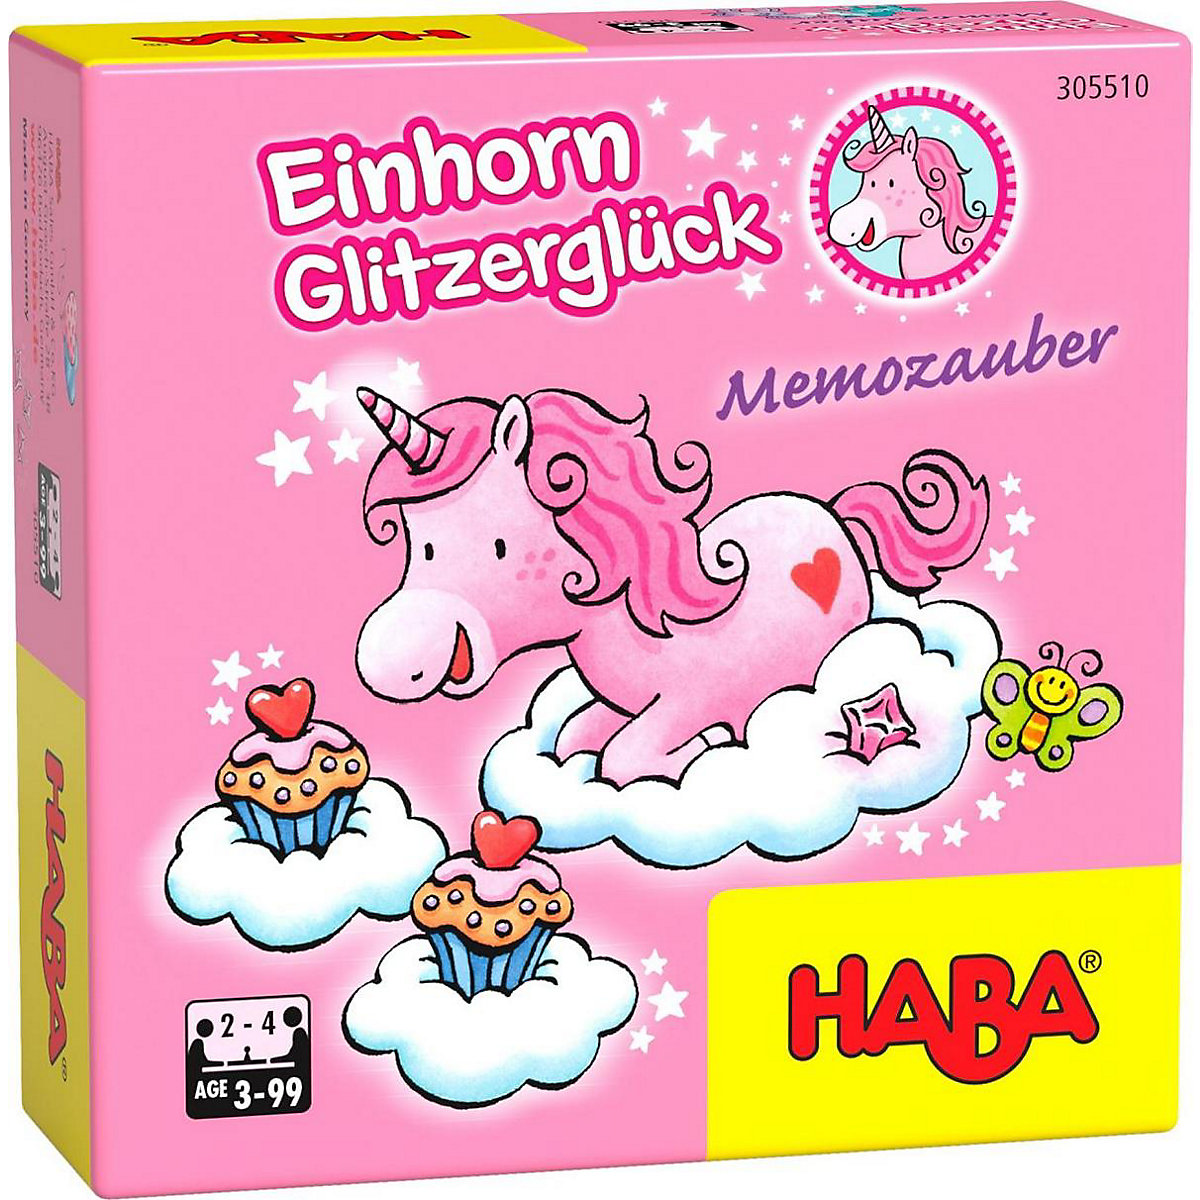 HABA 305510 Einhorn Glitzerglück – Memozauber